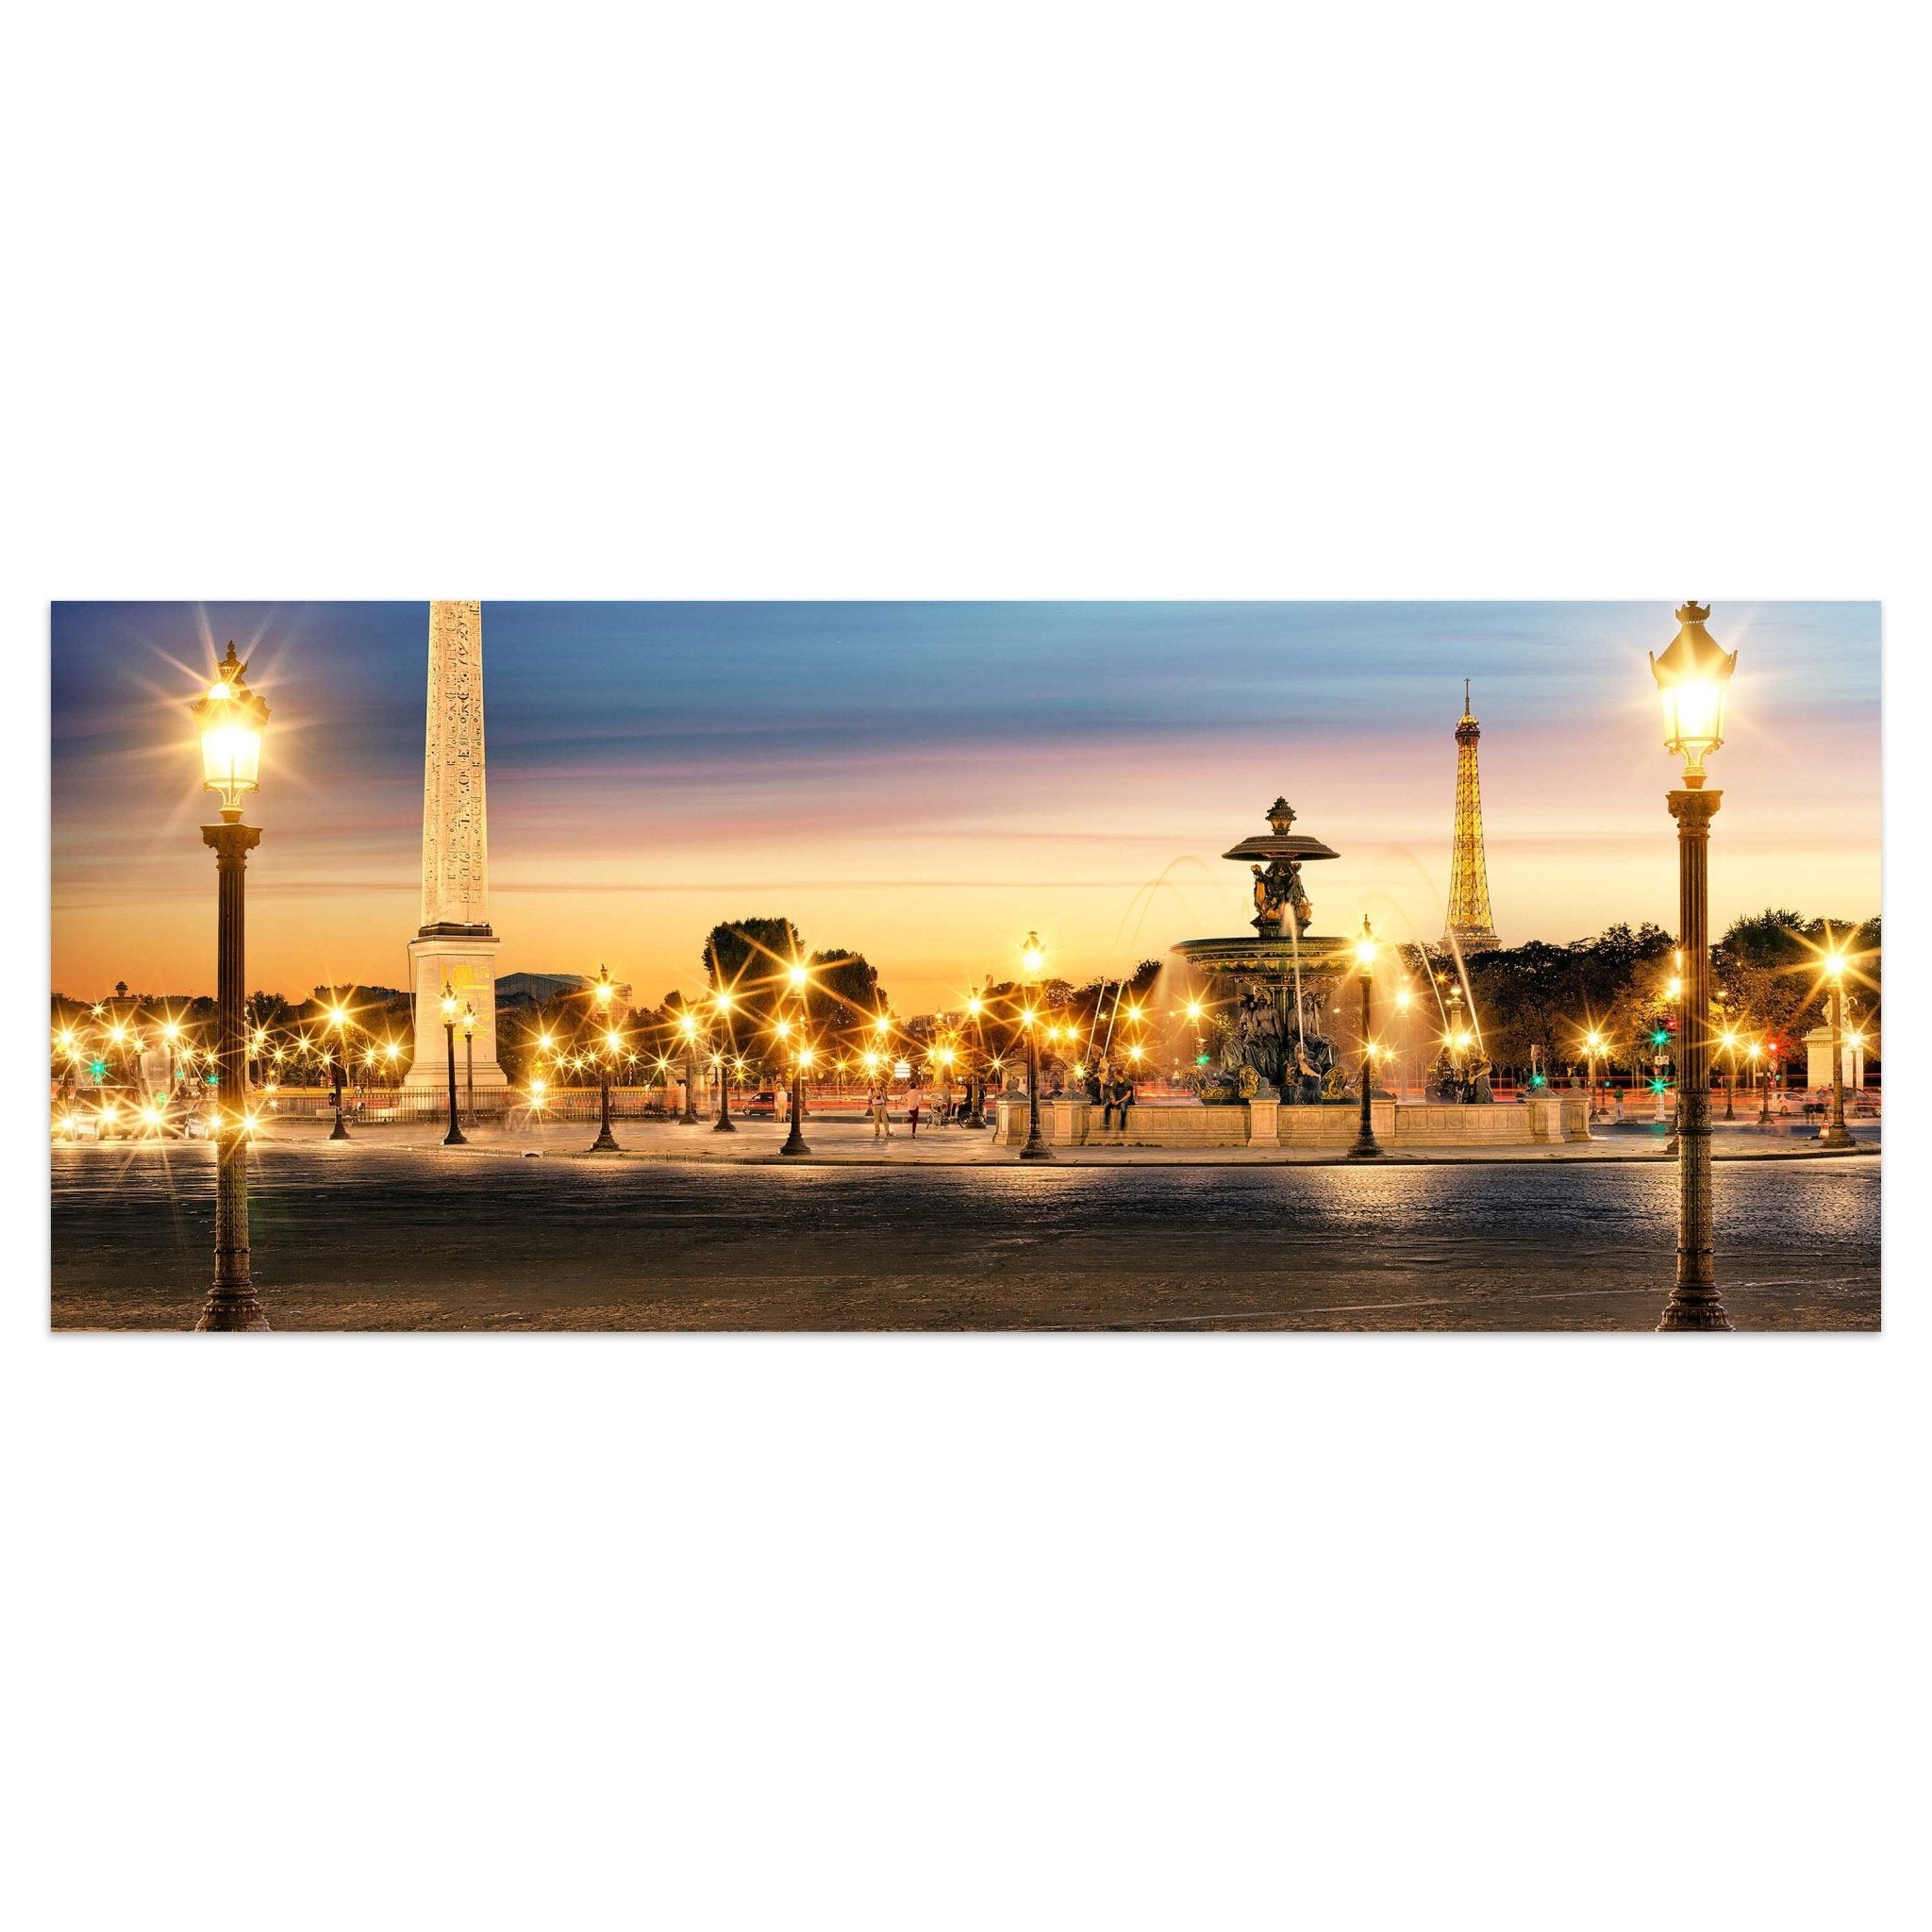 Leinwandbild Place de la Concorde M0295 kaufen - Bild 1